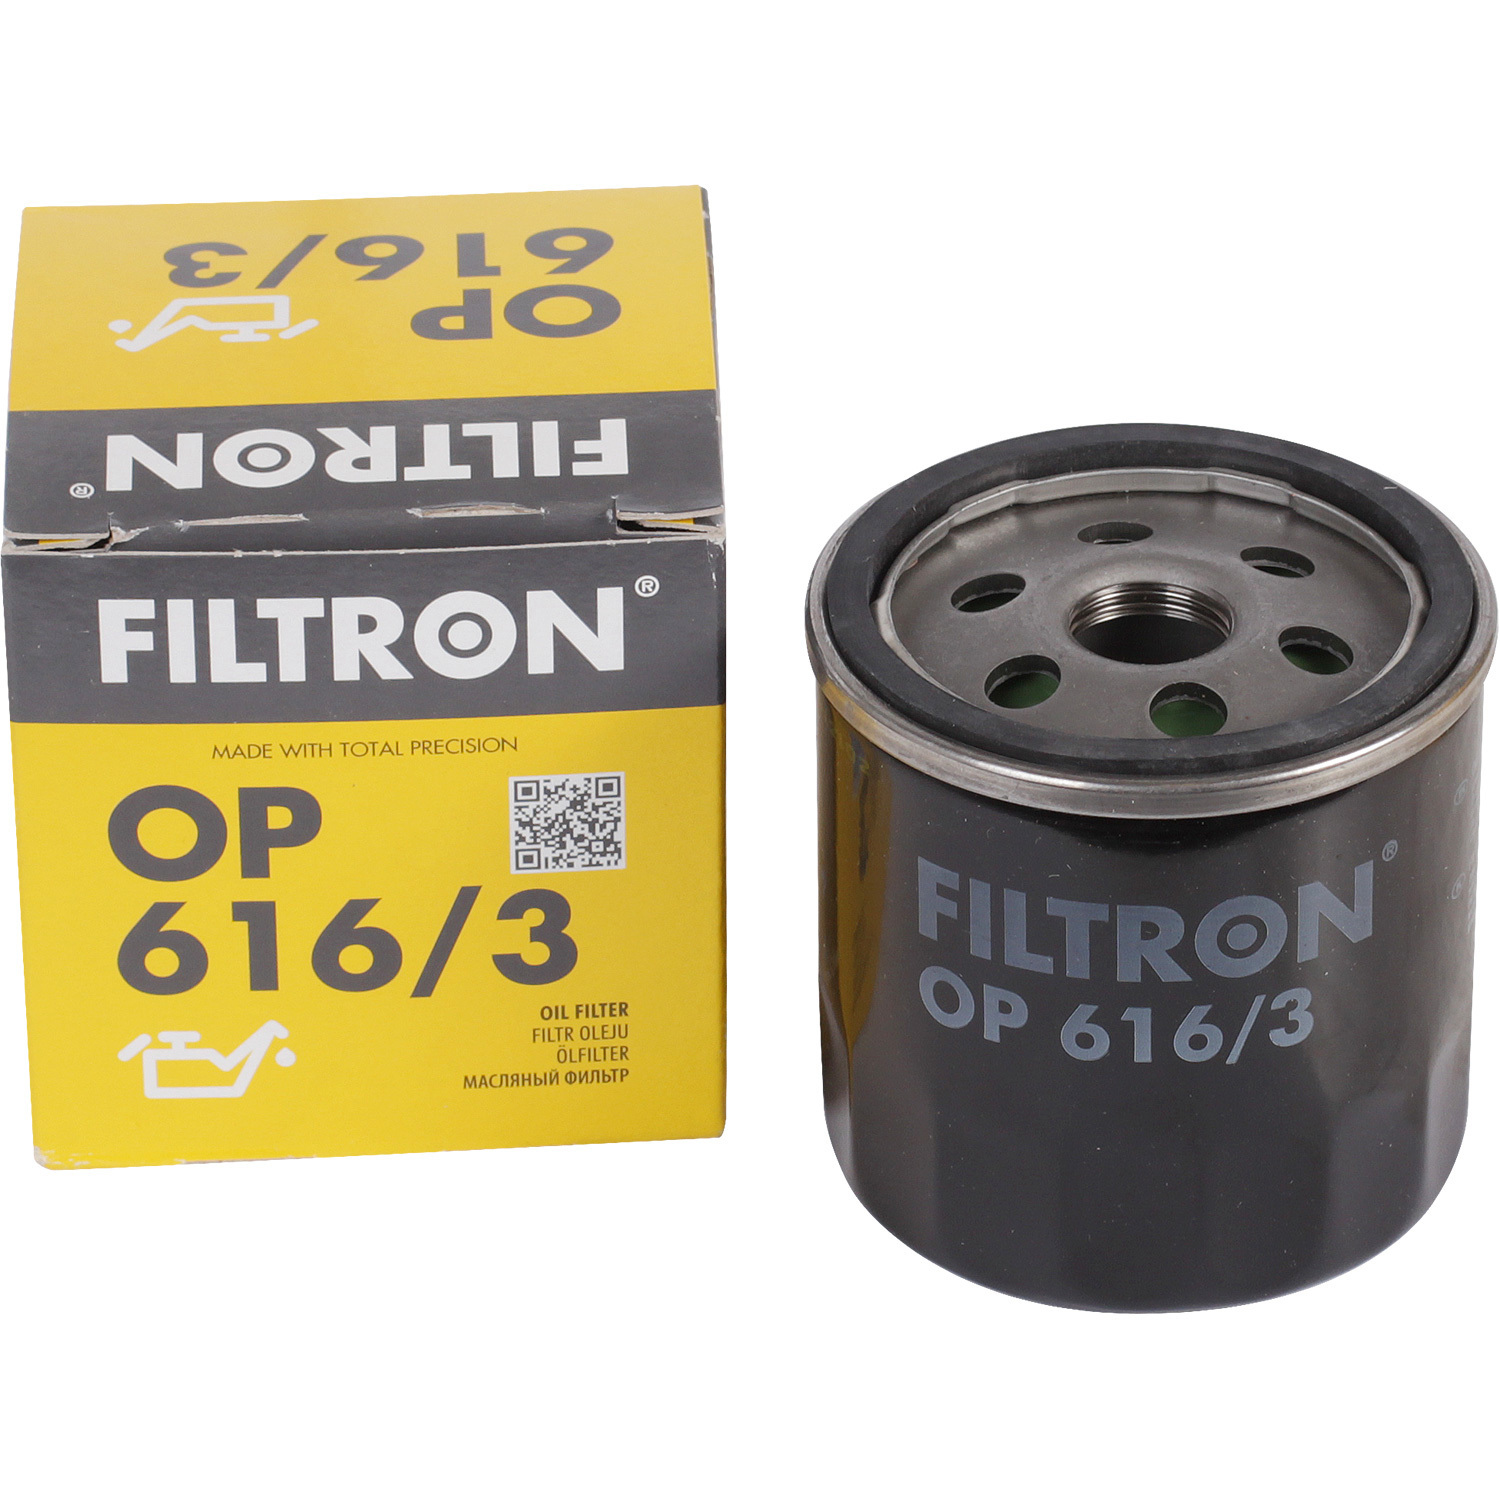 Фильтры Filtron Фильтр масляный Filtron OP6163 фильтры filtron фильтр масляный filtron op641